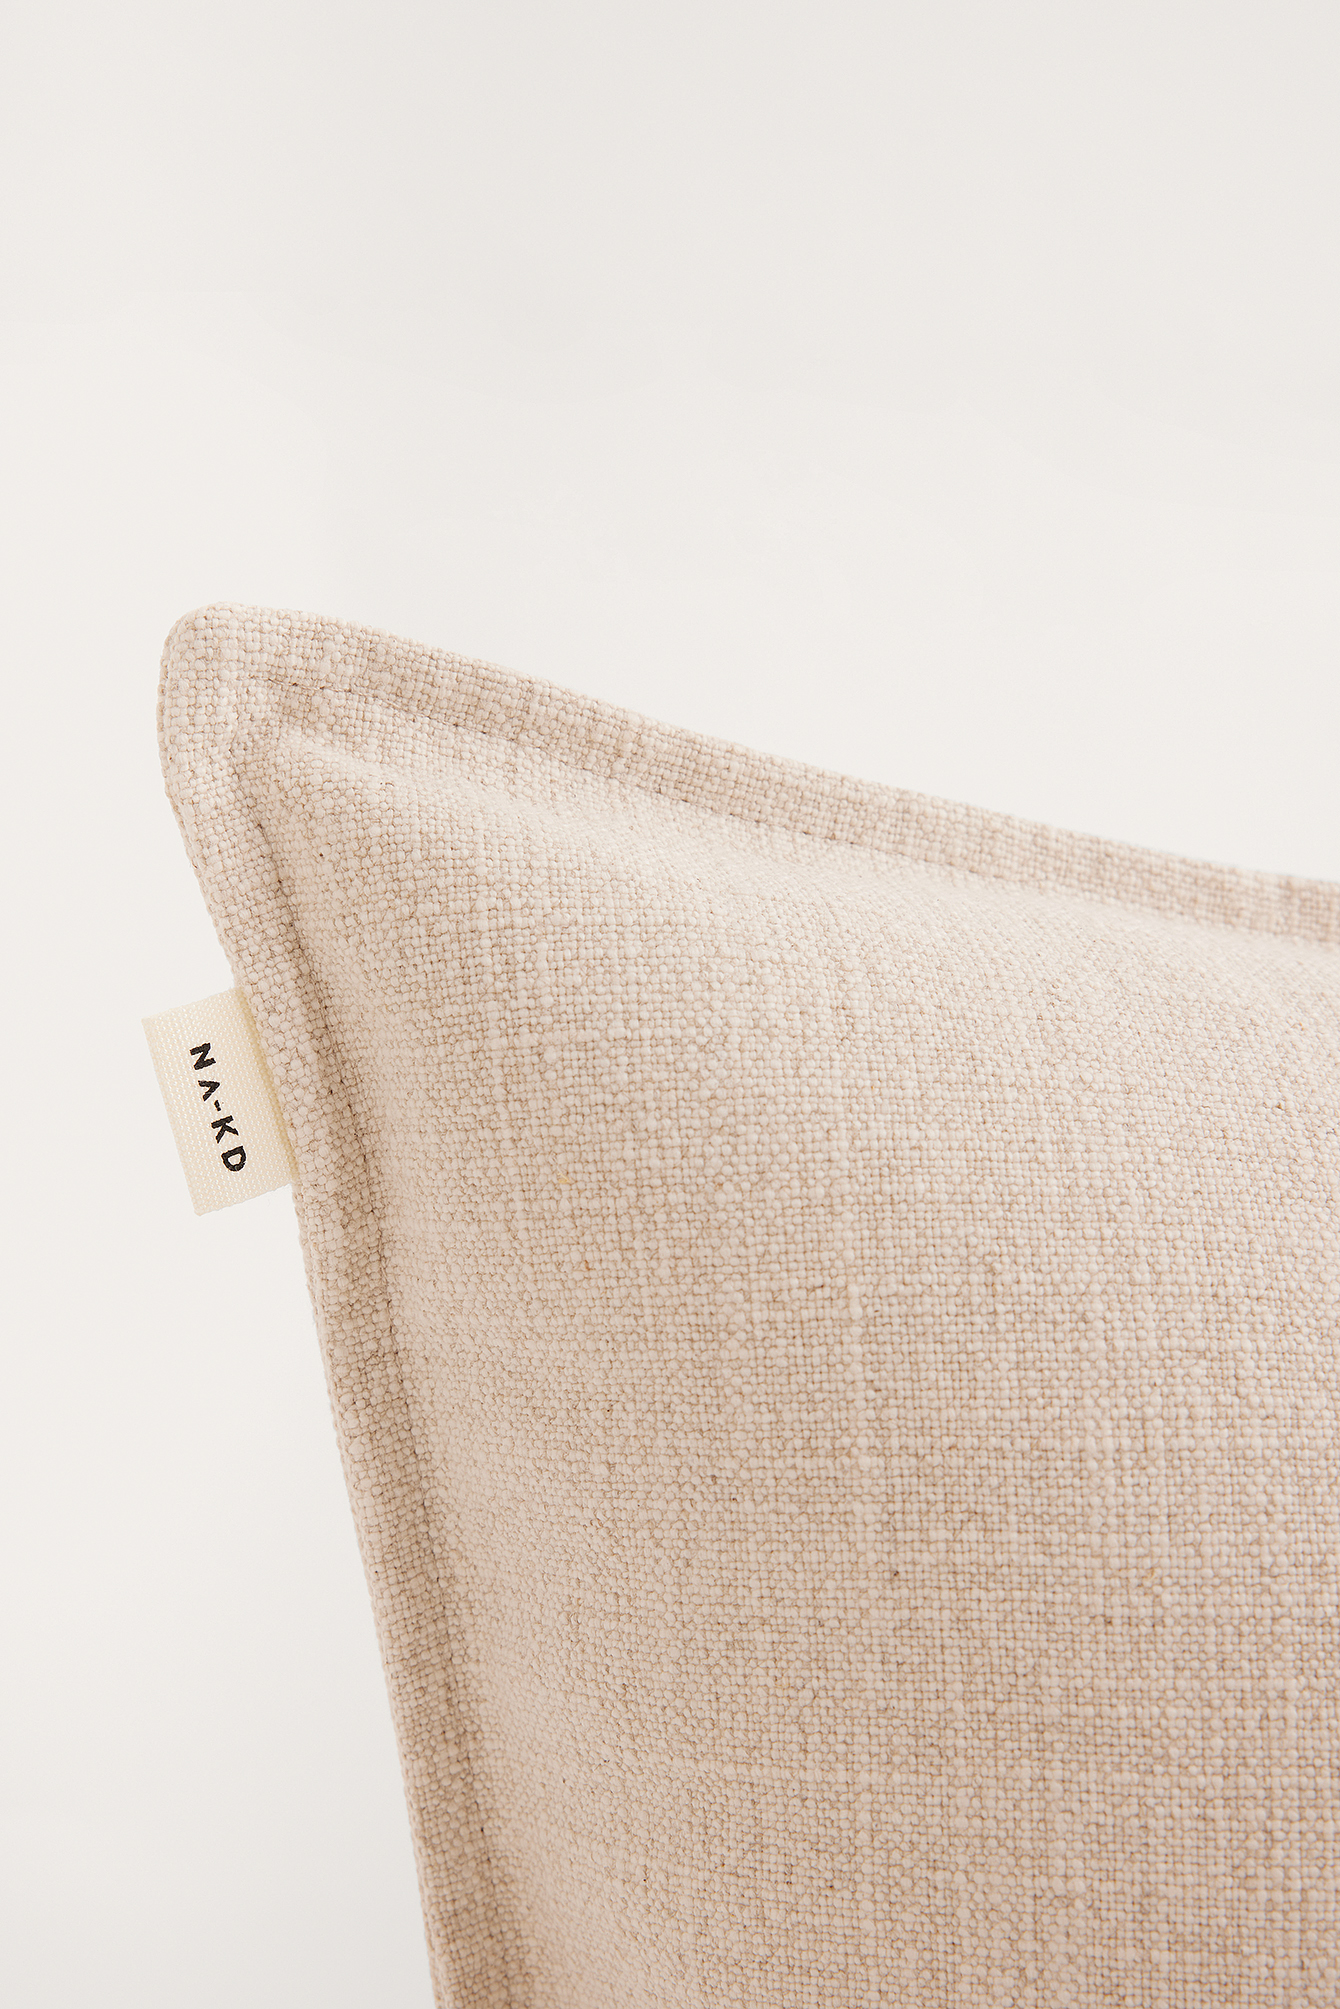 Light Beige Linen Blend Cushion Cover